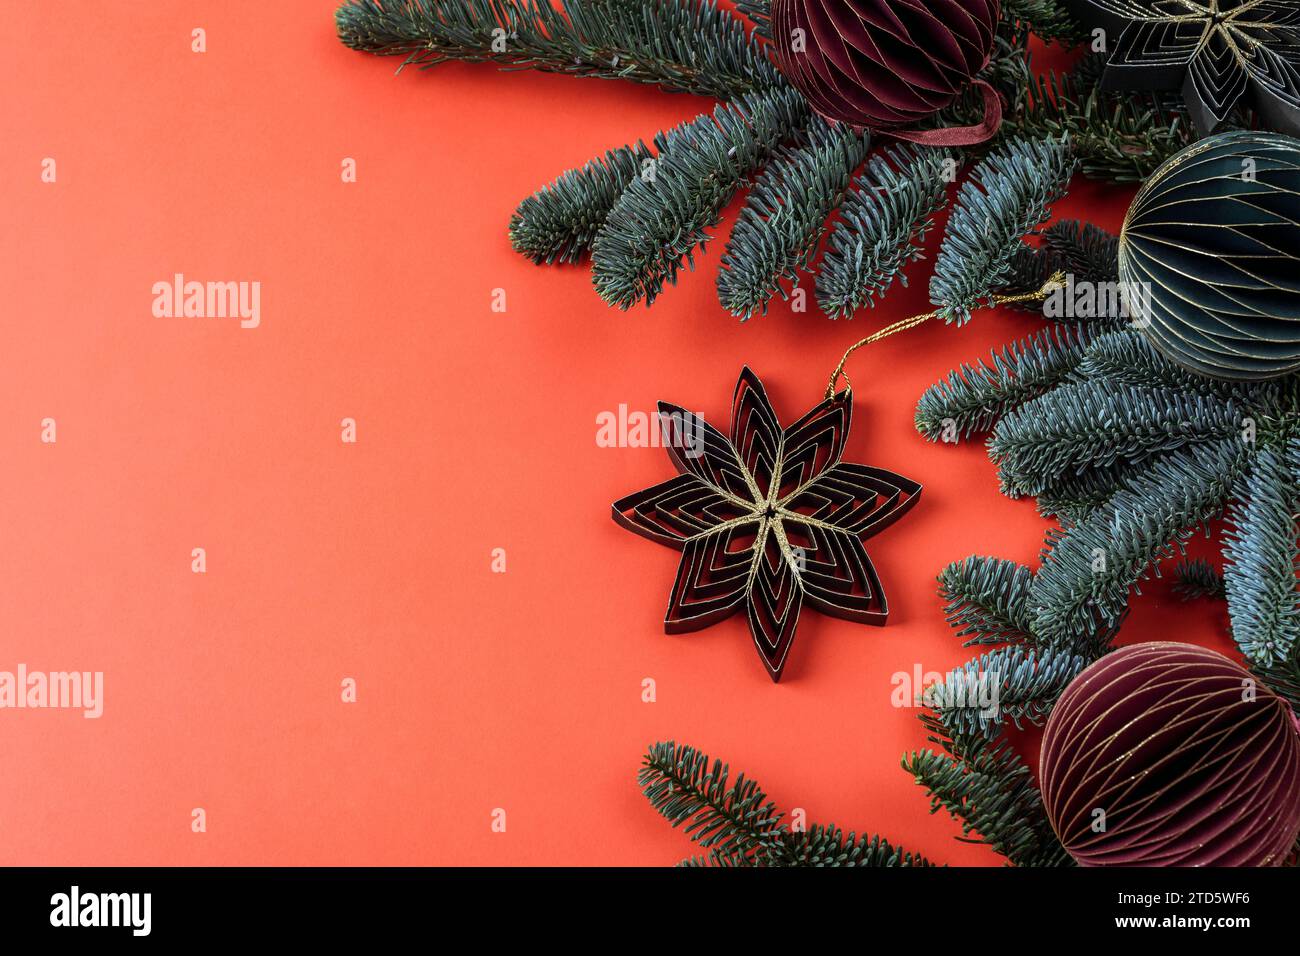 Fiocco di neve giocattolo di carta a nido d'ape su sfondo rosso. Rami di abete e balli di Natale, concetto di Capodanno. Vista dall'alto, base piatta, spazio di copia. Foto Stock